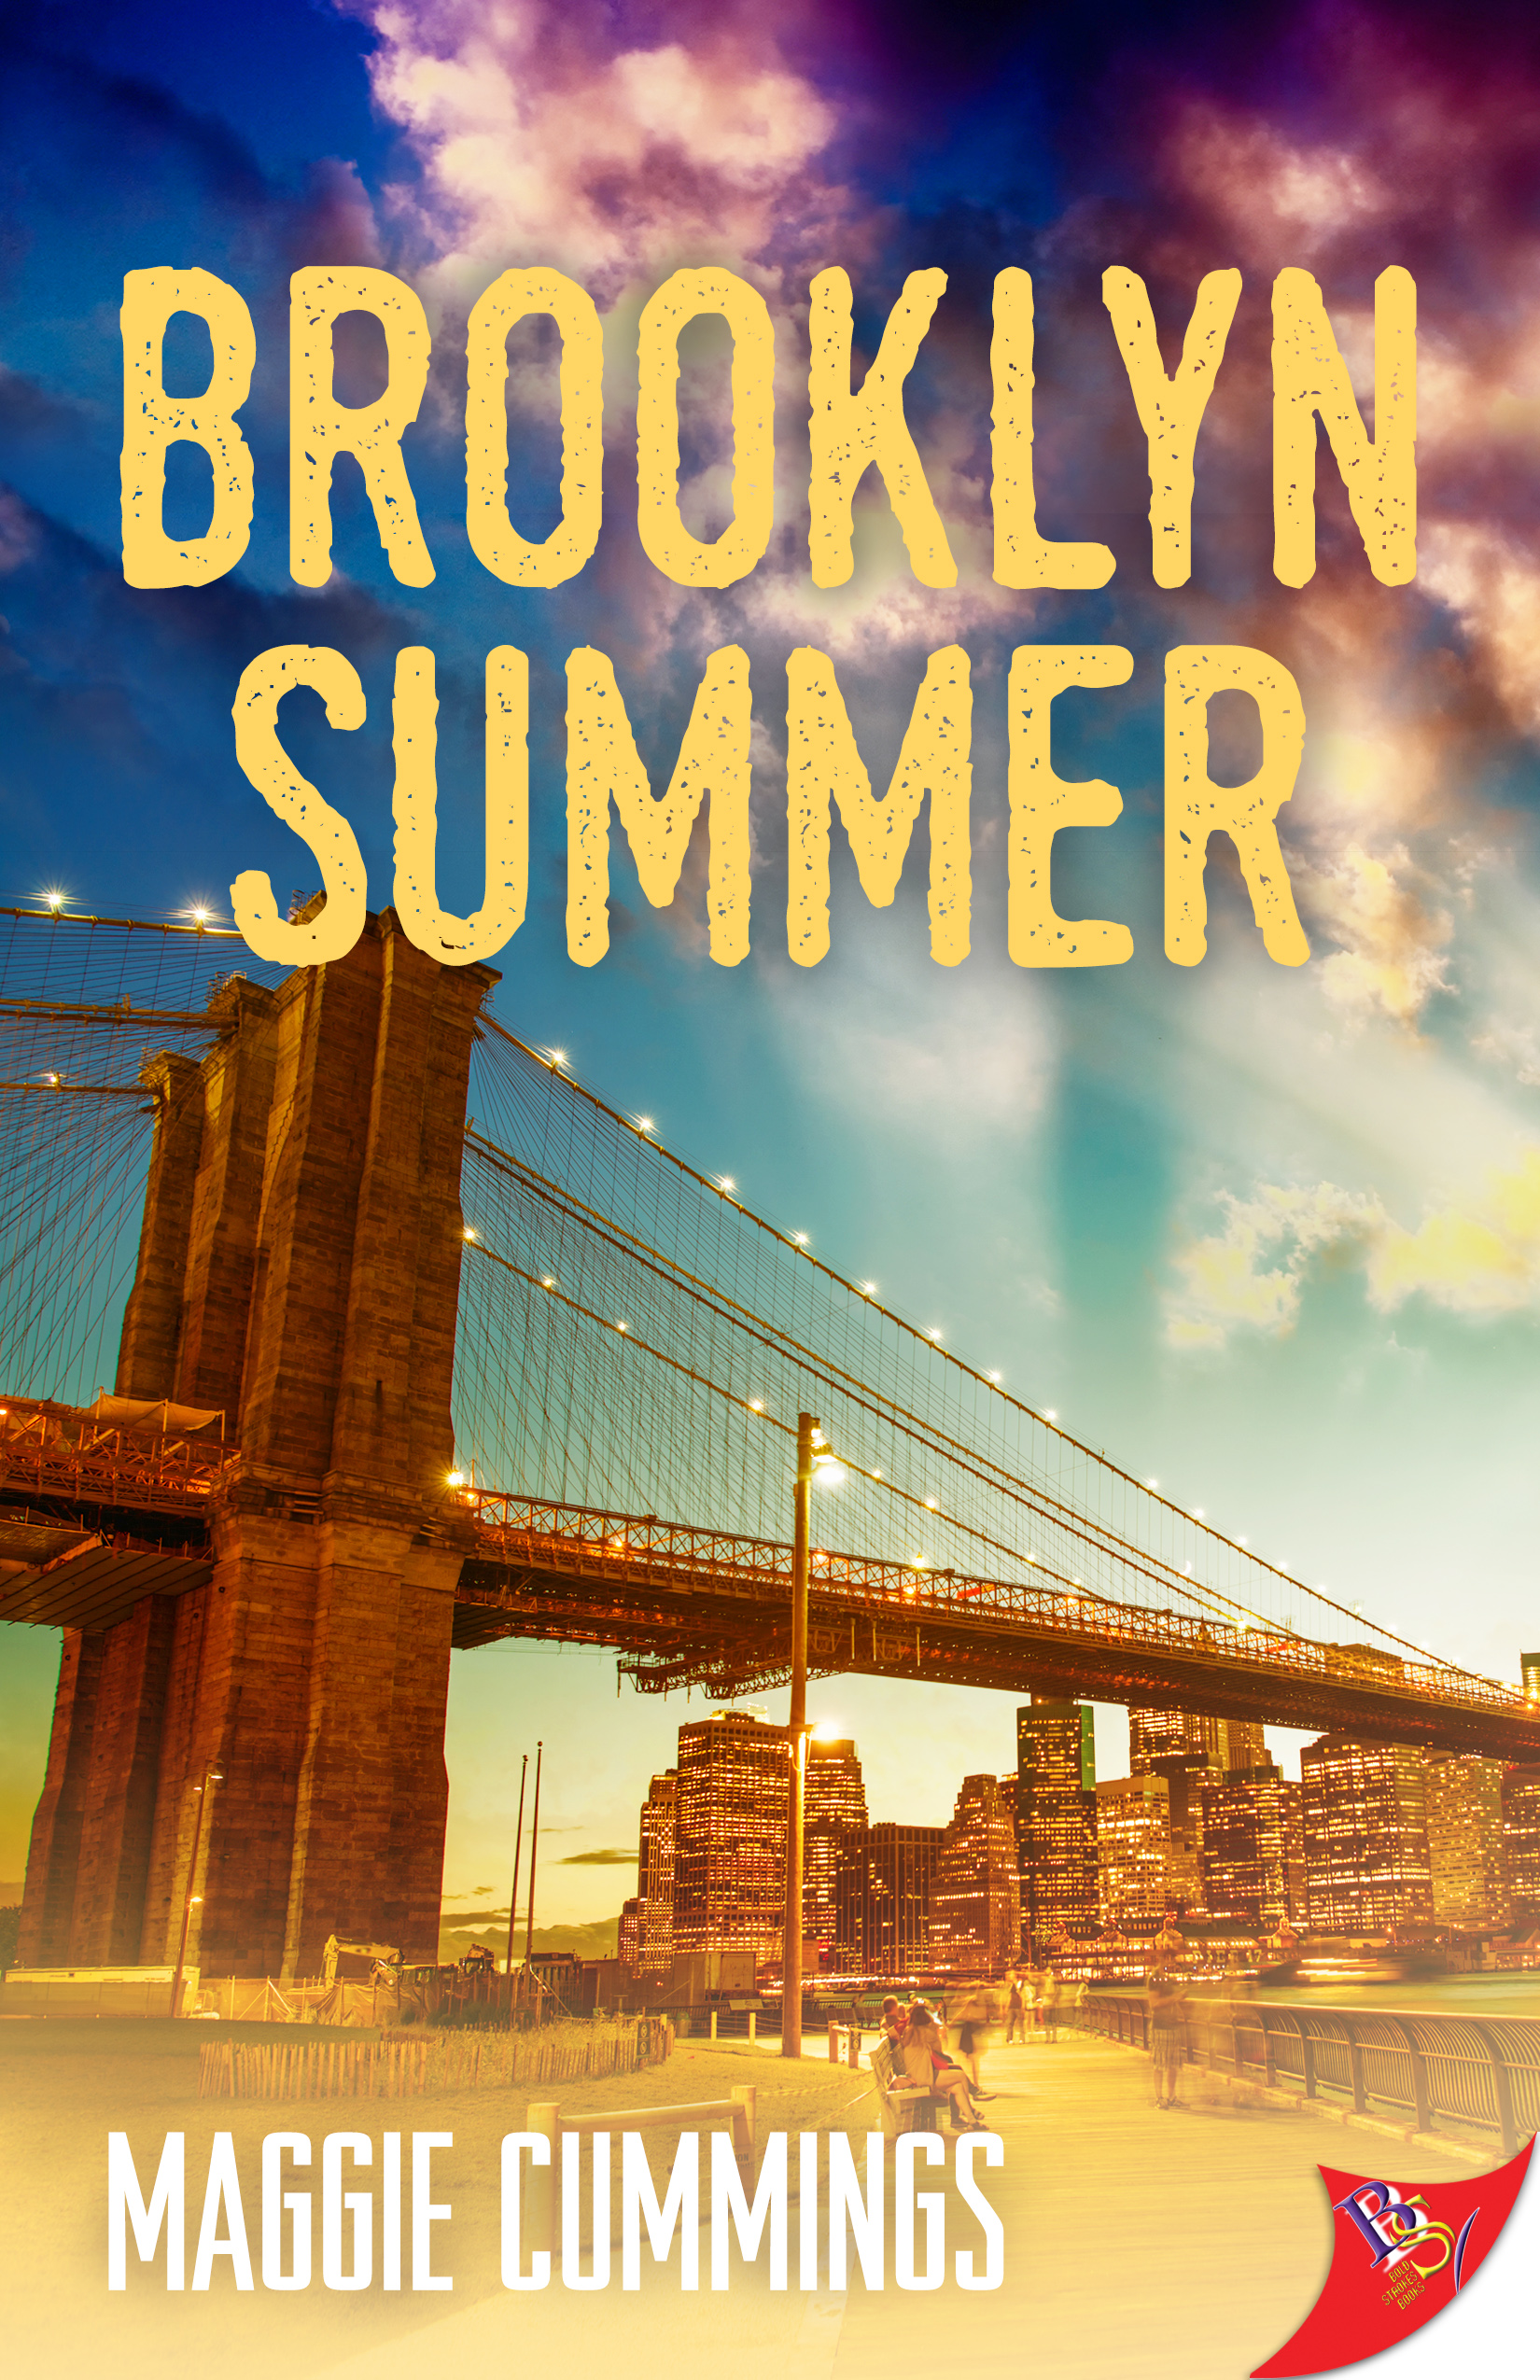 Brooklynn summers